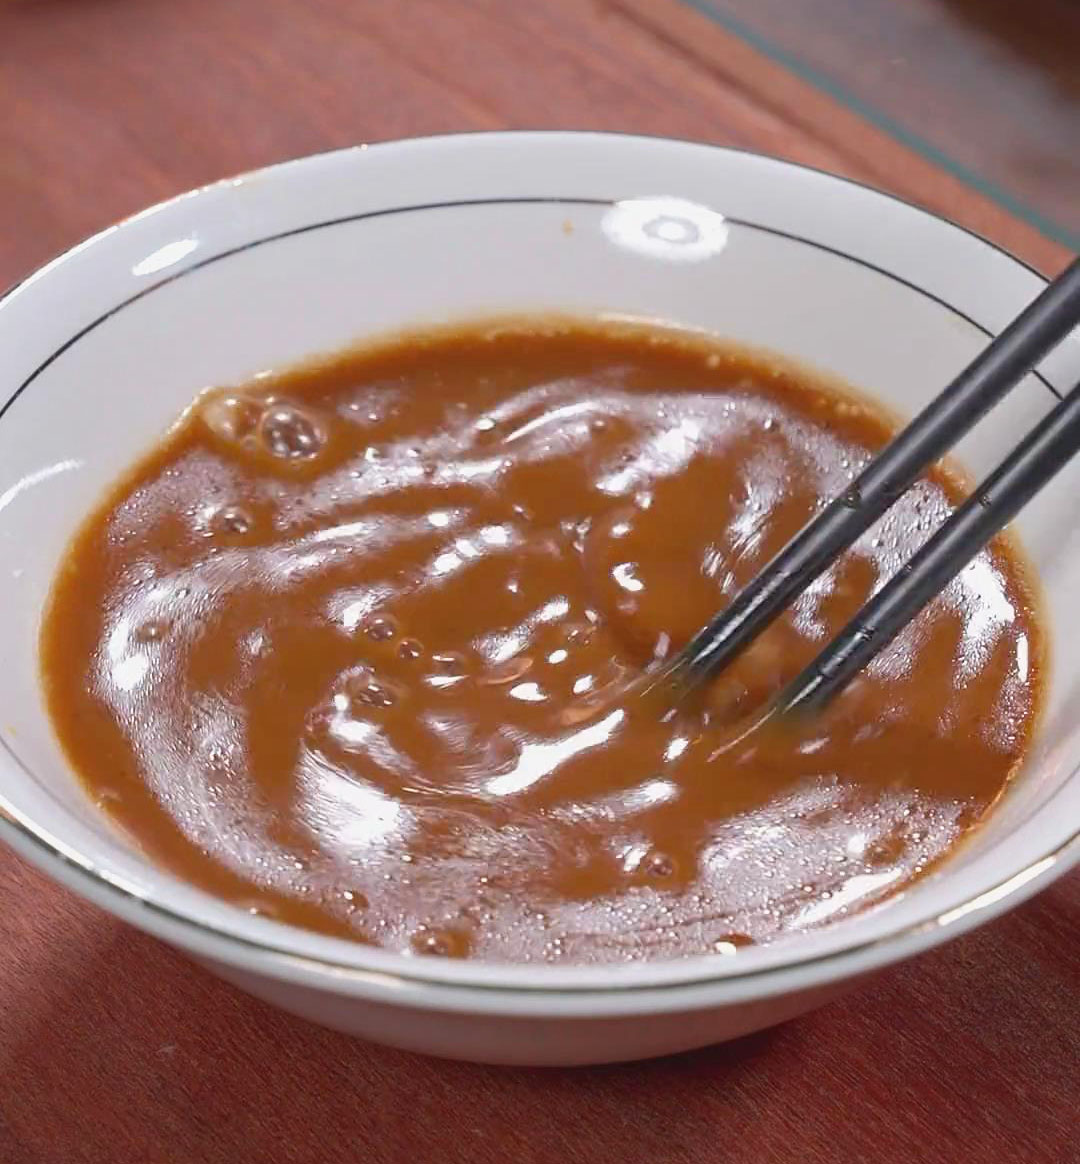 Yu Xiang sauce